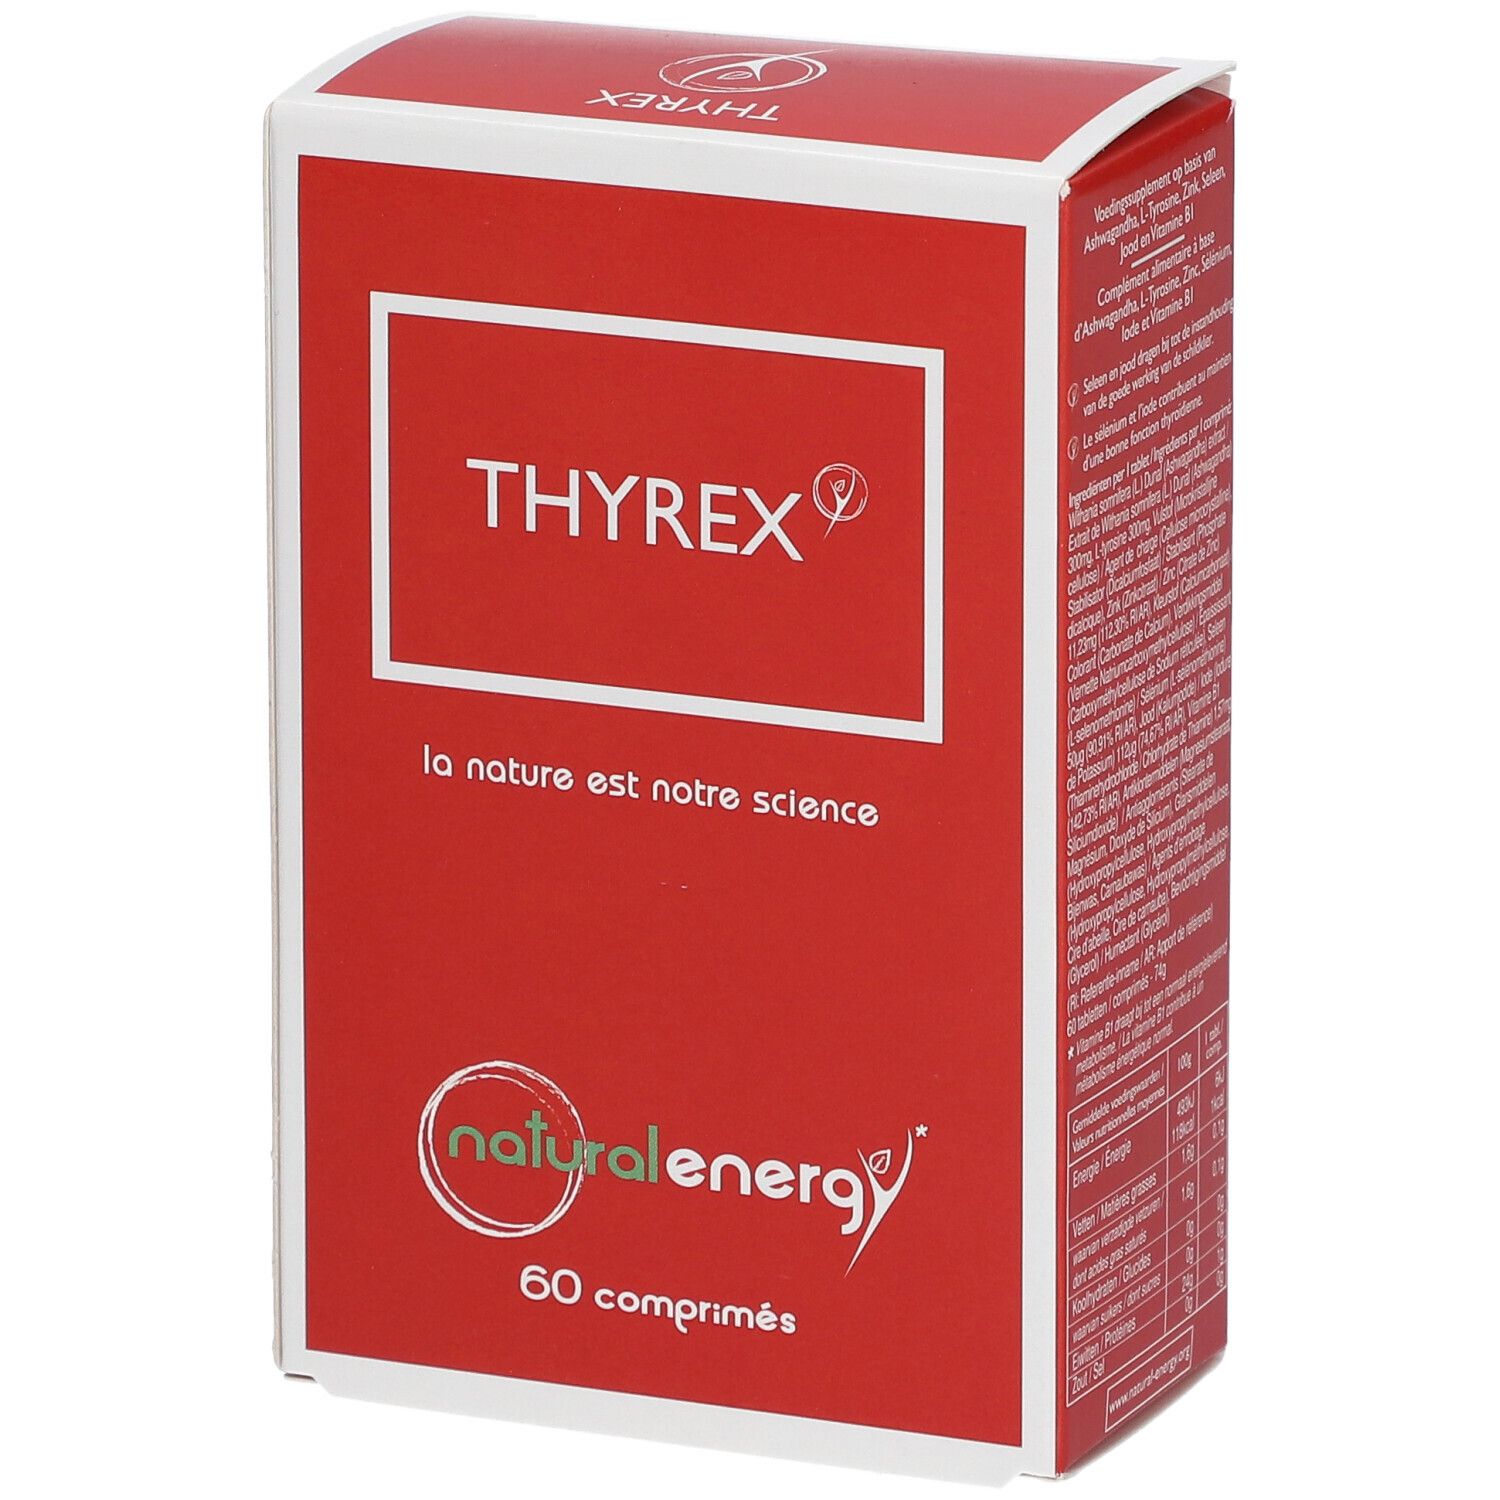 Natural Energy Thyrex 60 comprimés